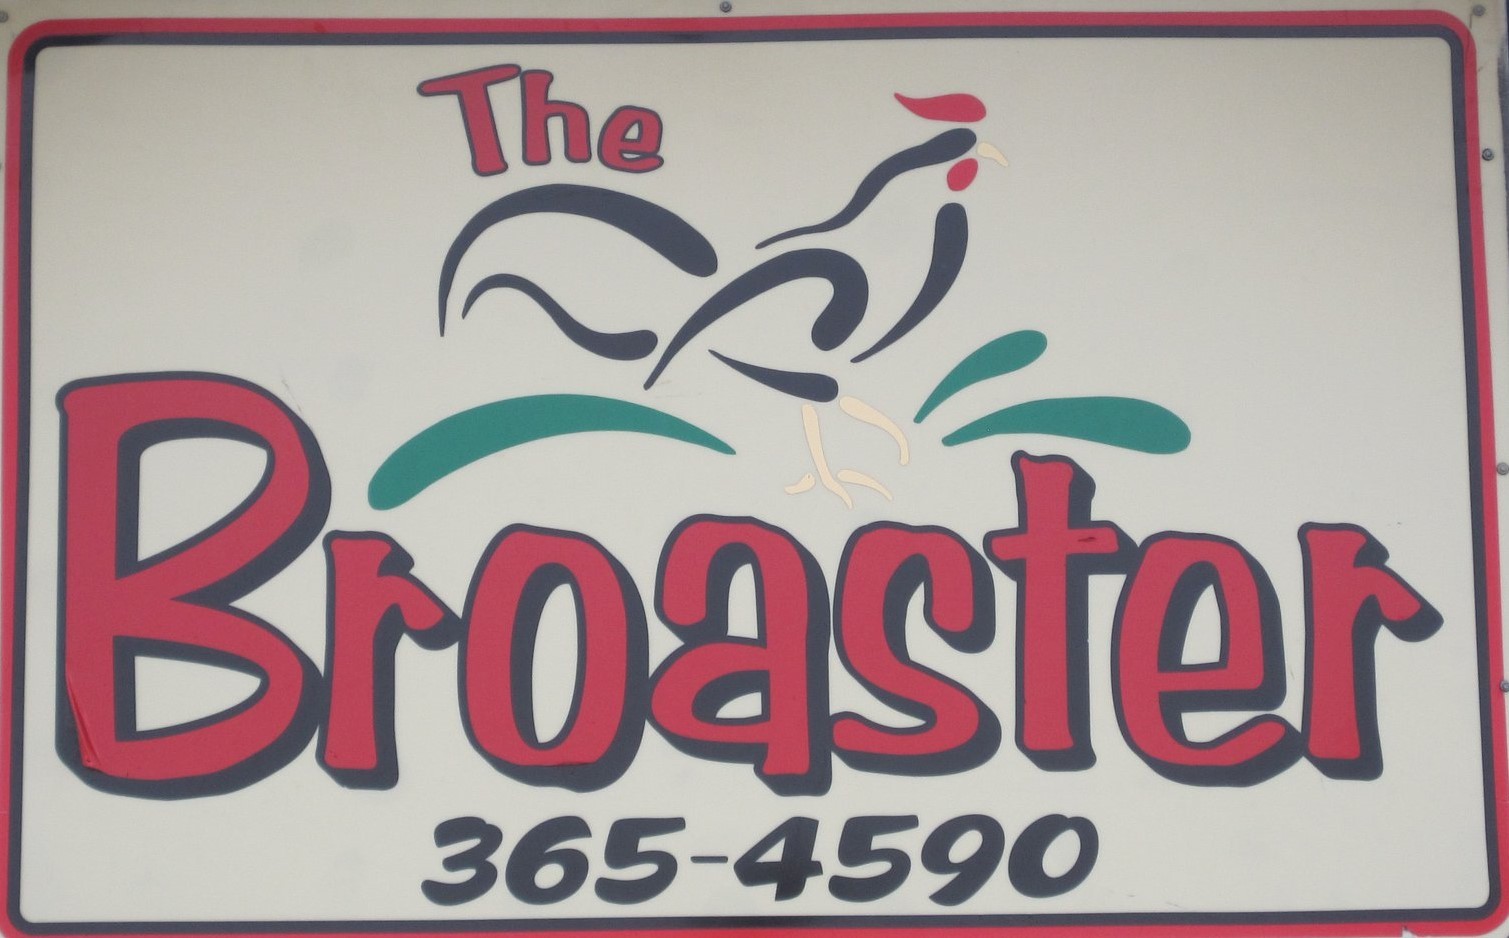 Broaster Café